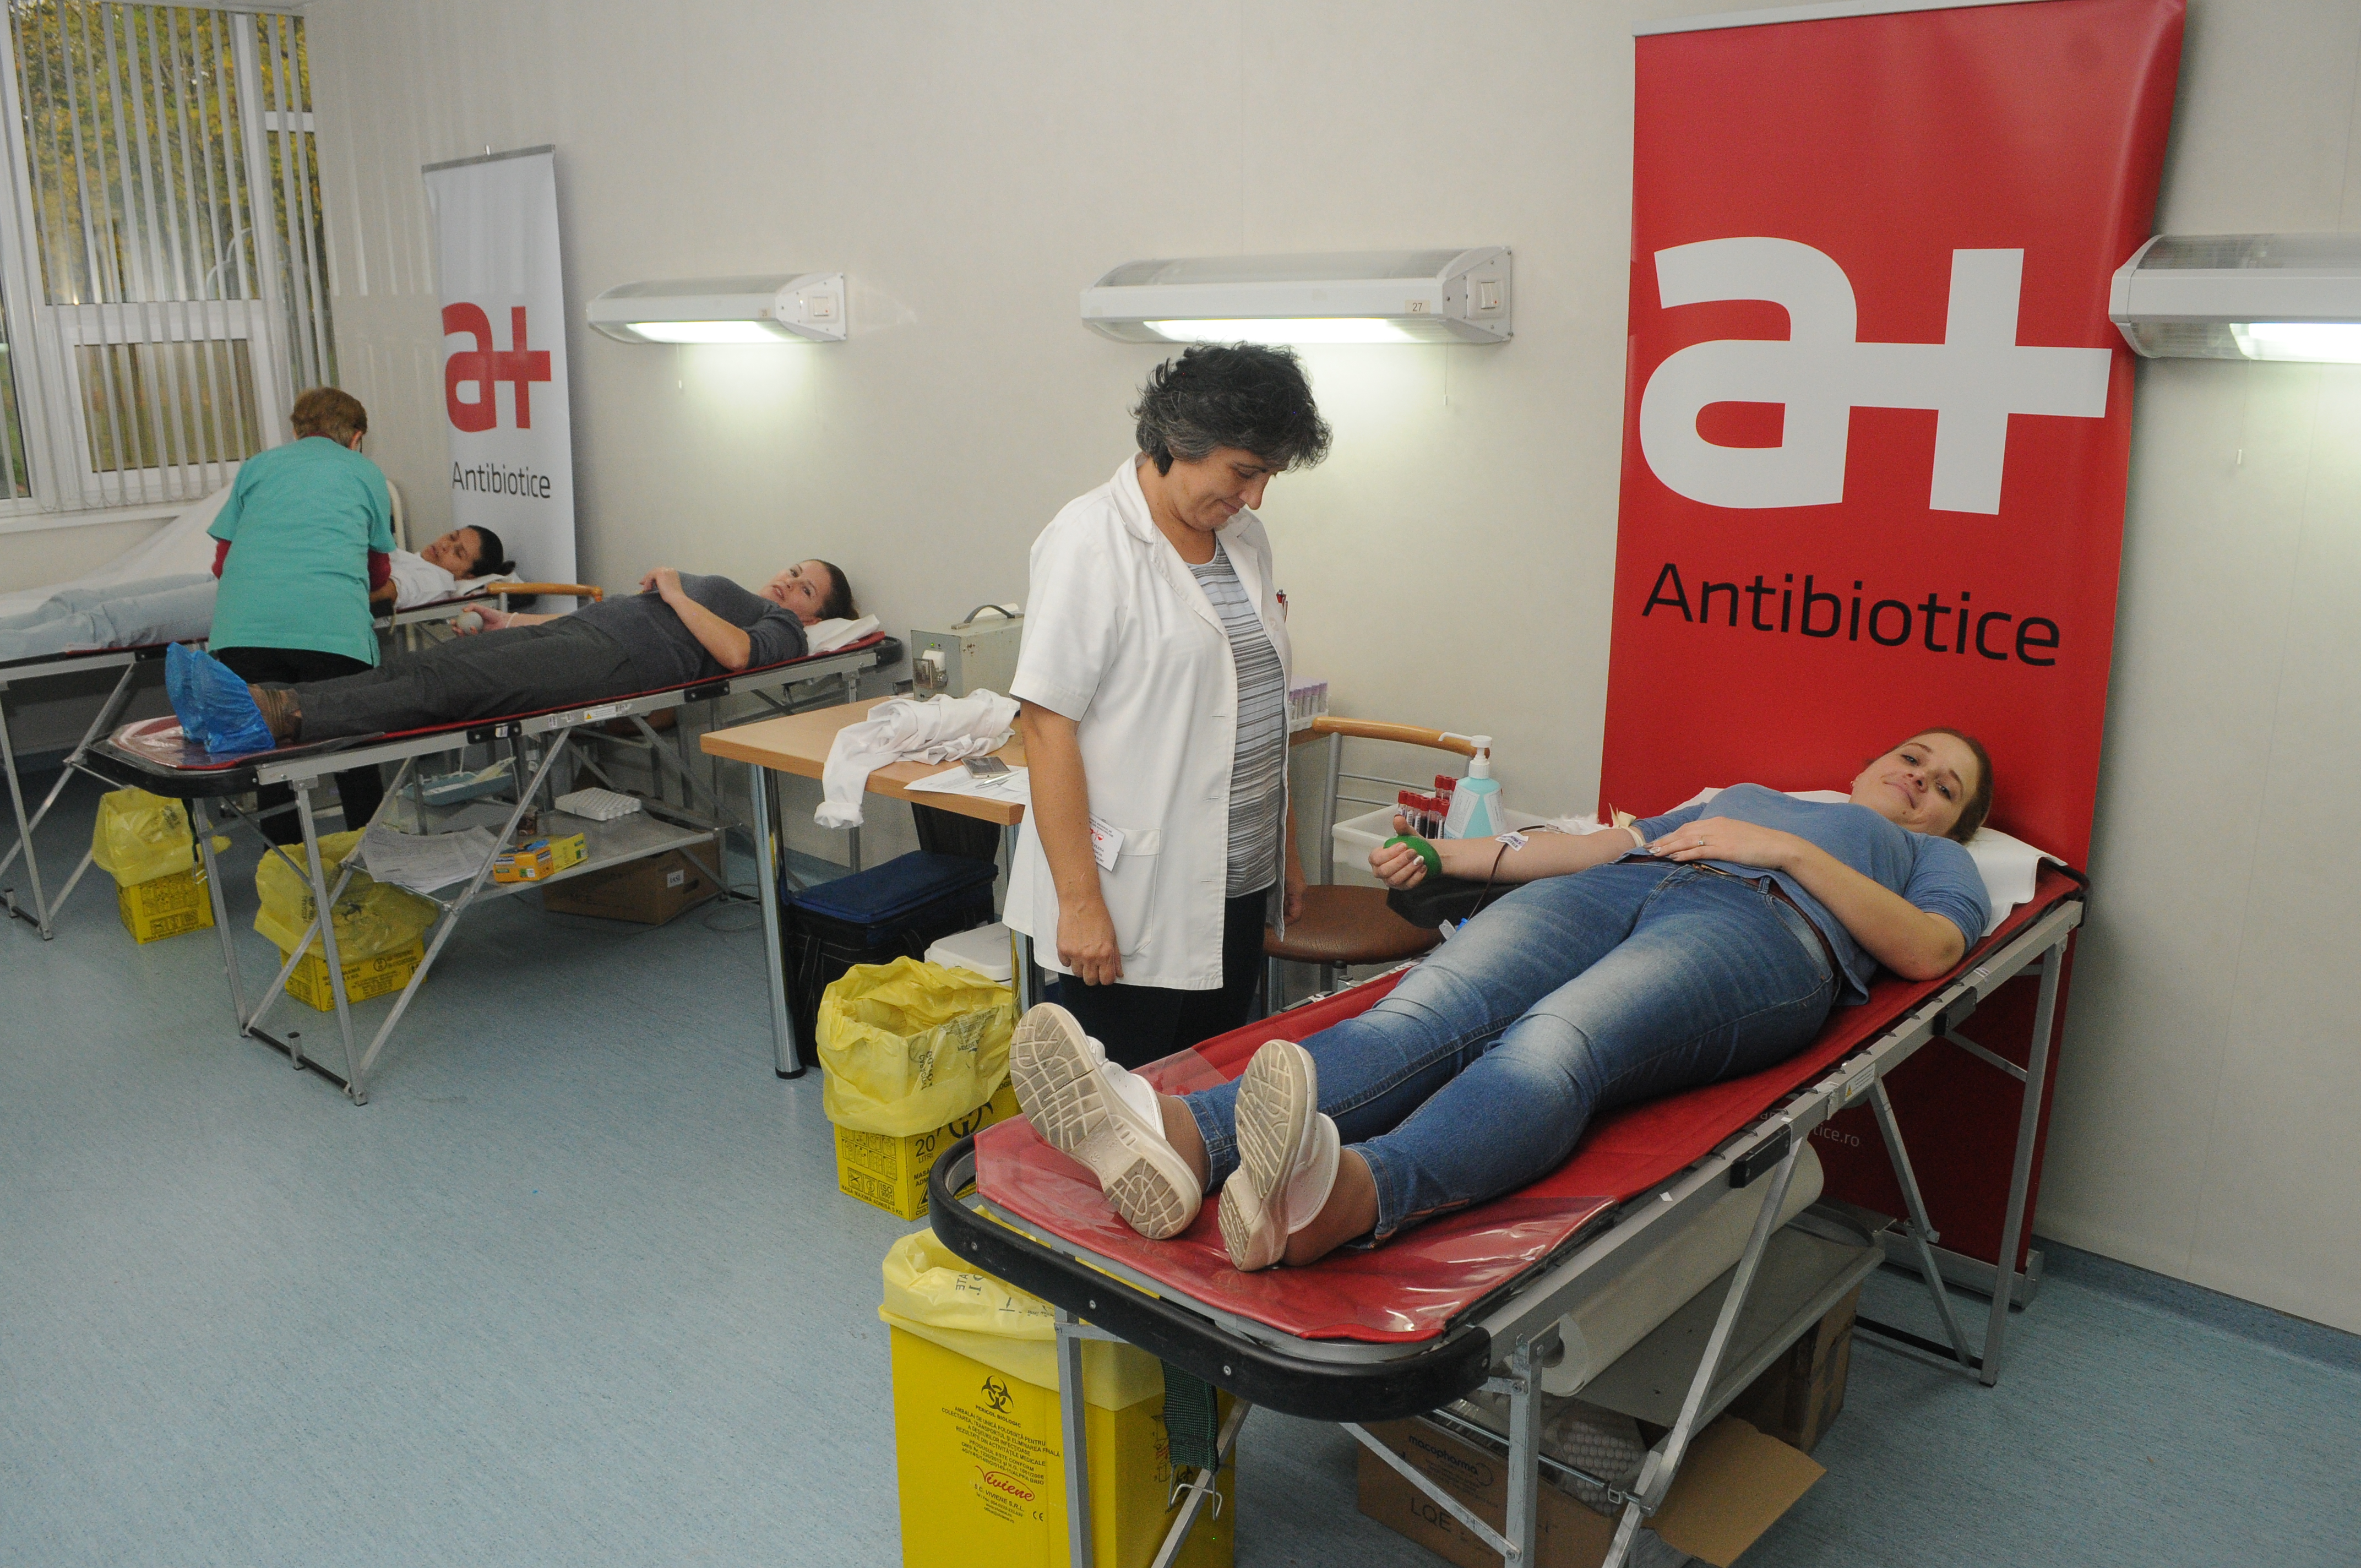 De 9 ani angajații Antibiotice donează sânge: 60 donatori, 30 litri de sânge donaţi, mai mult de 130 vieţi salvate